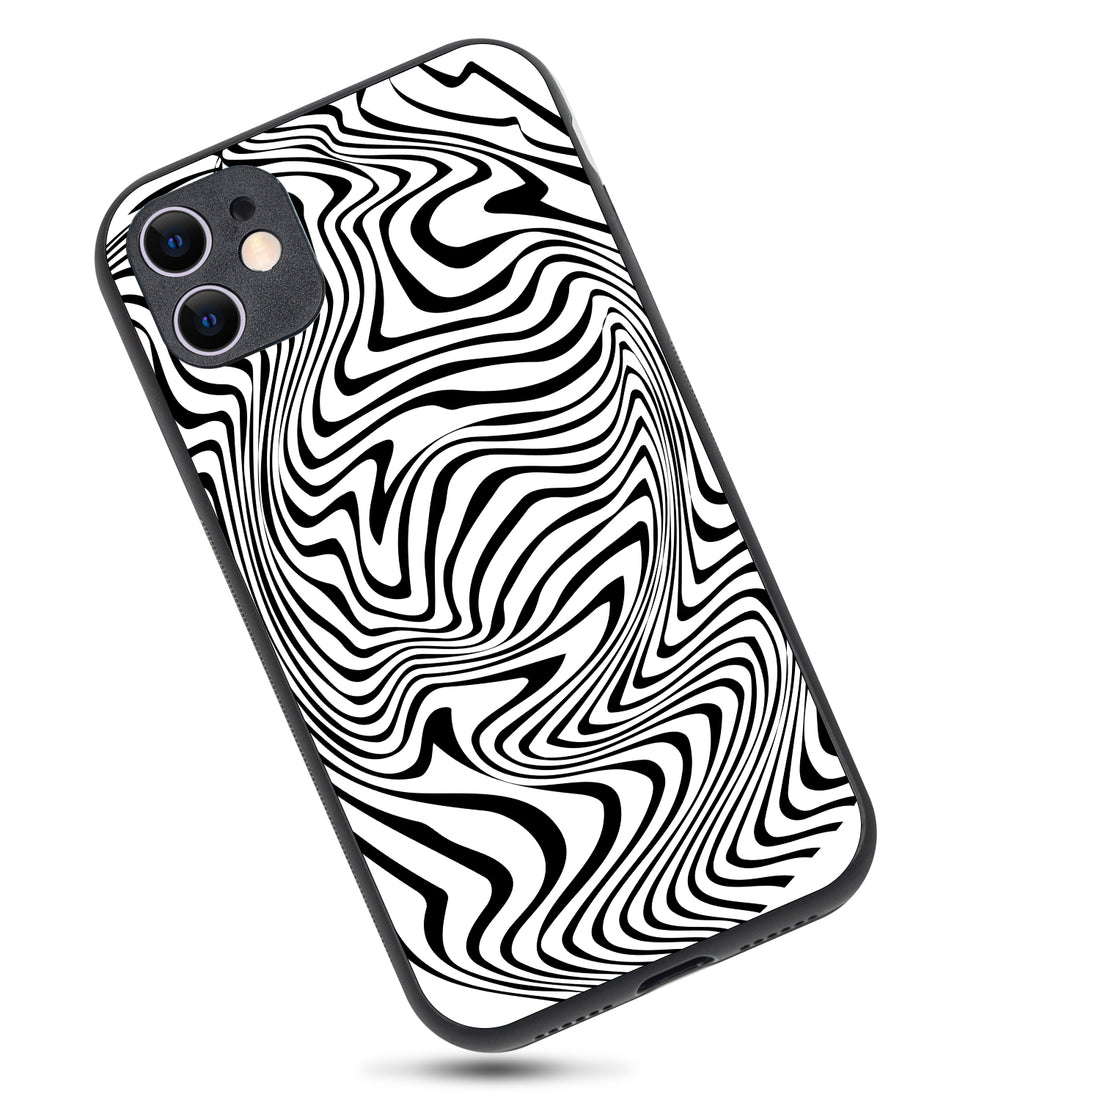 White Zig-Zag Optical Illusion iPhone 11 Case